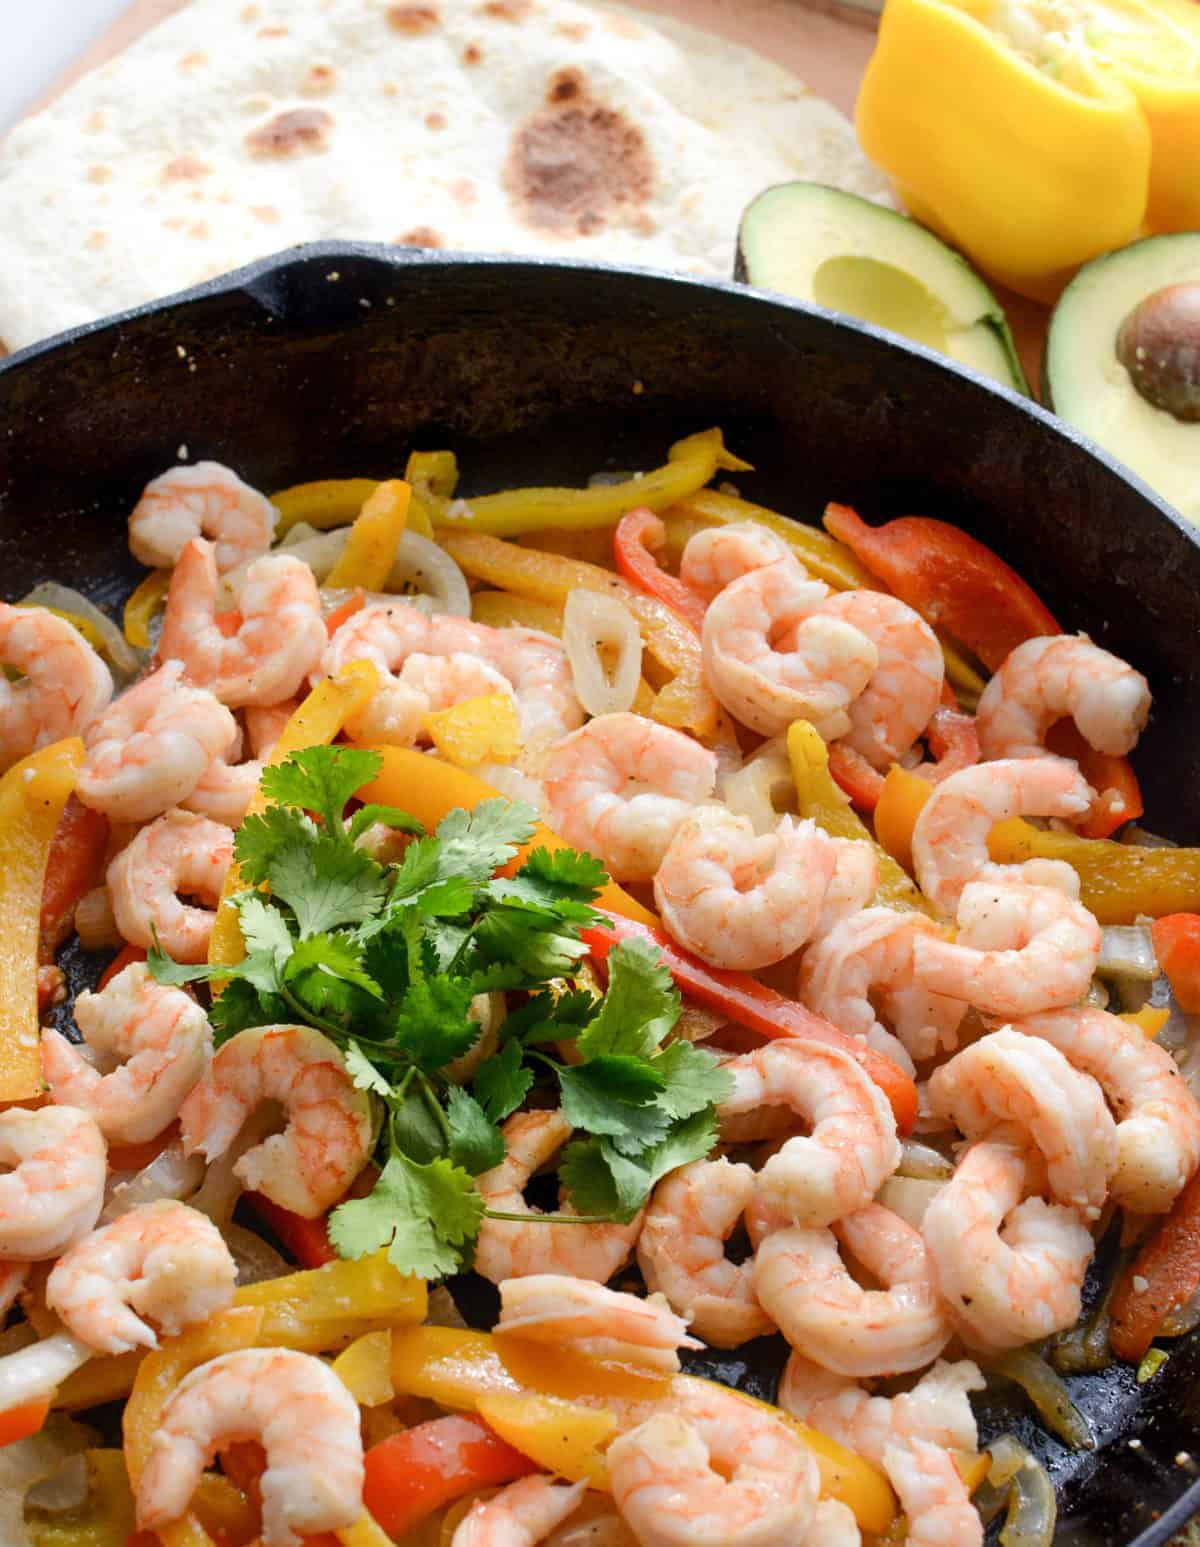 Simple Shrimp Fajita Recipe the whole family will love, done in 20 minutes!